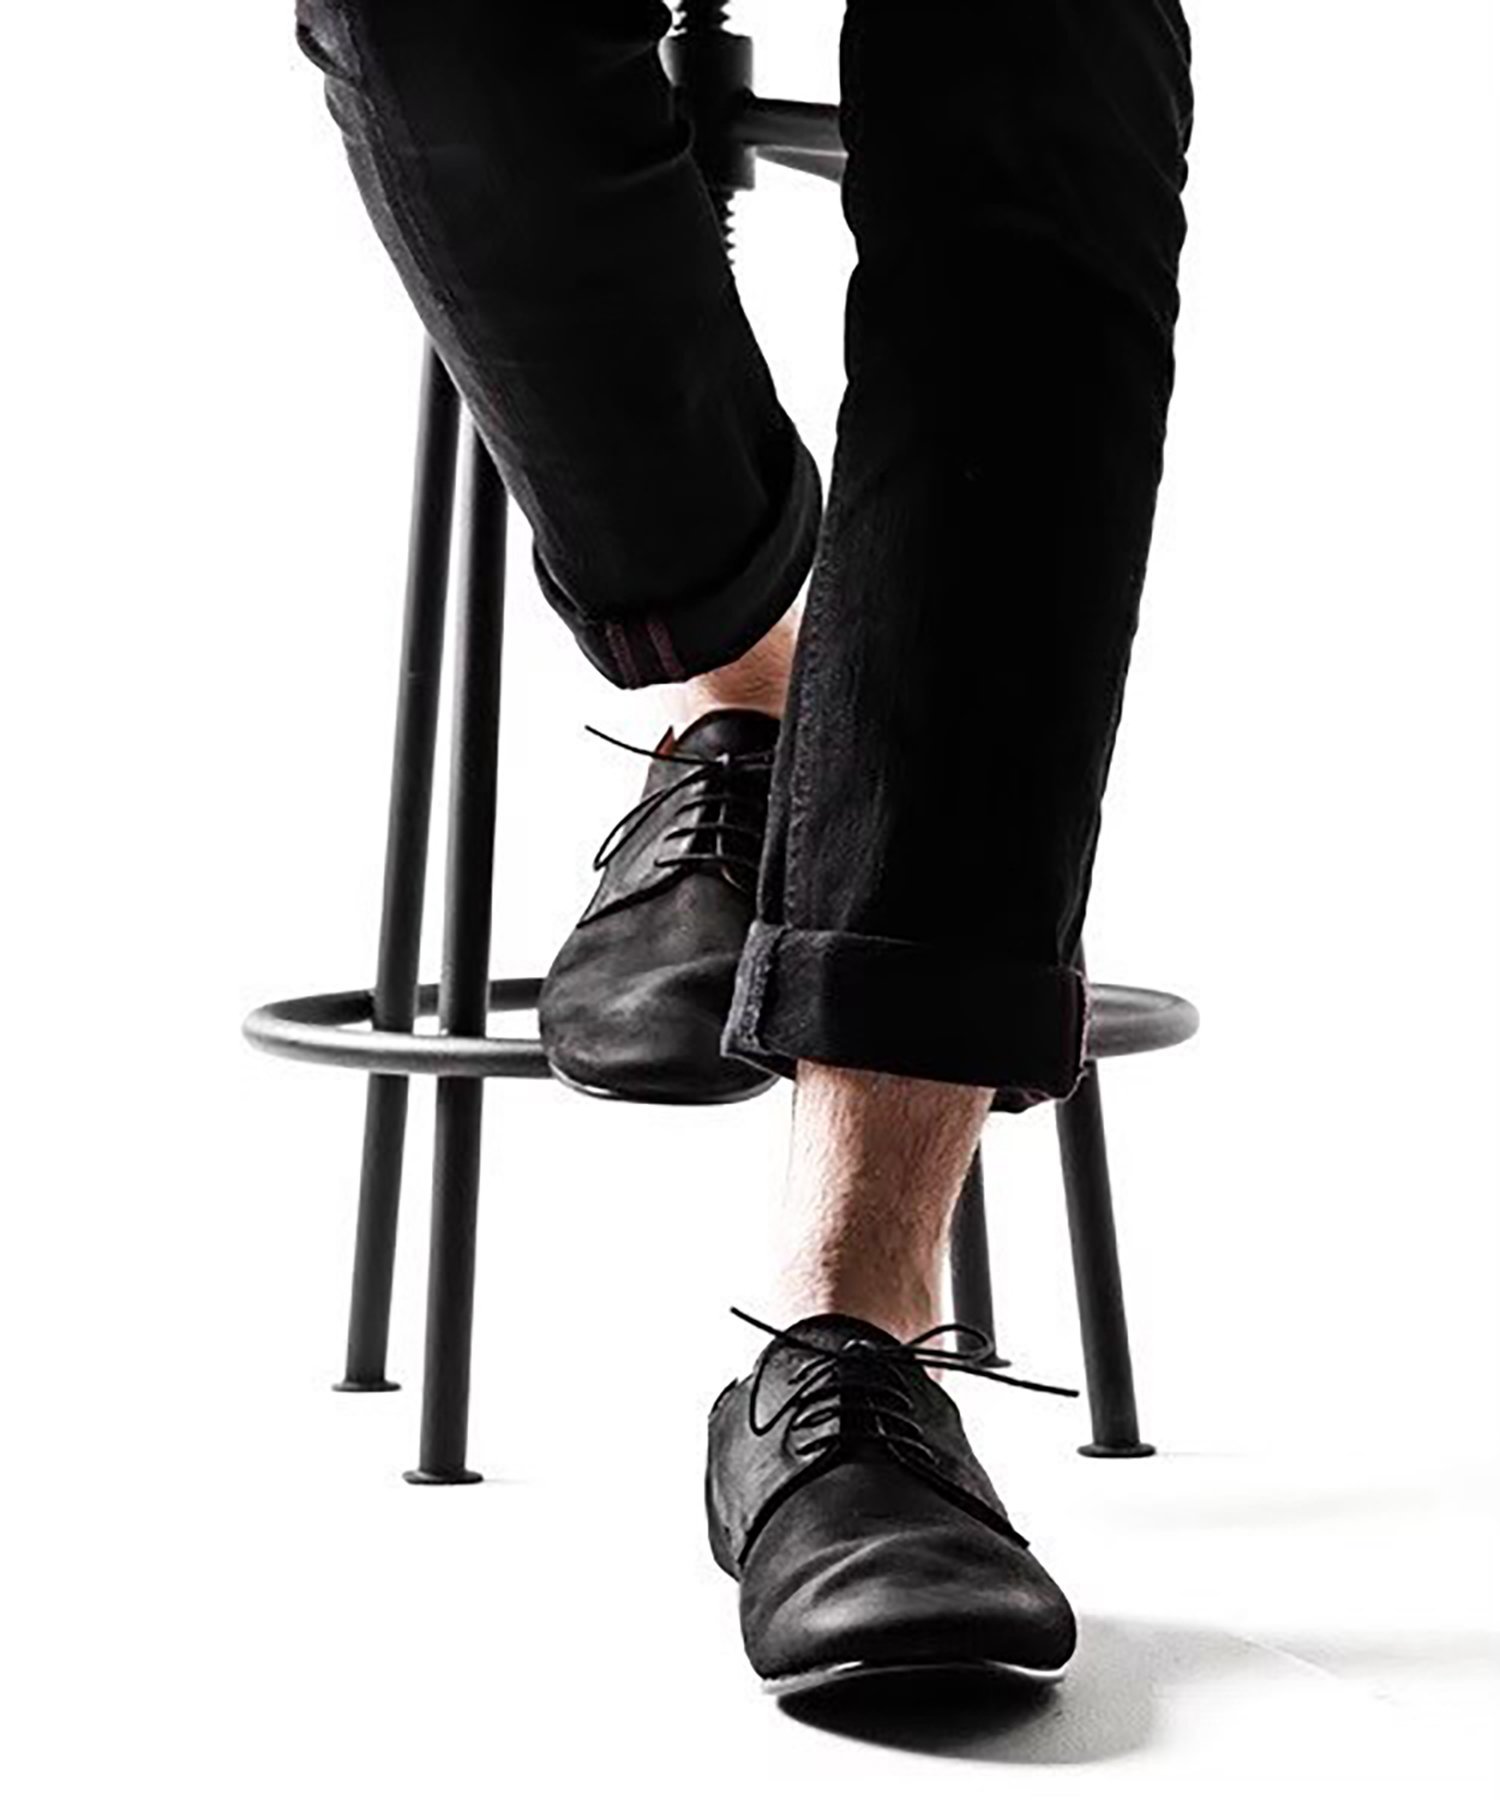 パドローネ ビジネスシューズ メンズ PADRONE ARCOLLETTA ARCOLLETTA PADRONE/【SETUP7 別注】ヌバックダンスシューズ レースアップシューズ ビジネスシューズ 本革 革靴 メンズシューズ 日本製 MADE IN JAPAN アルコレッタ パドローネ セットアップセブン シューズ・靴 レースアップ・ドレスシュー【送料無料】